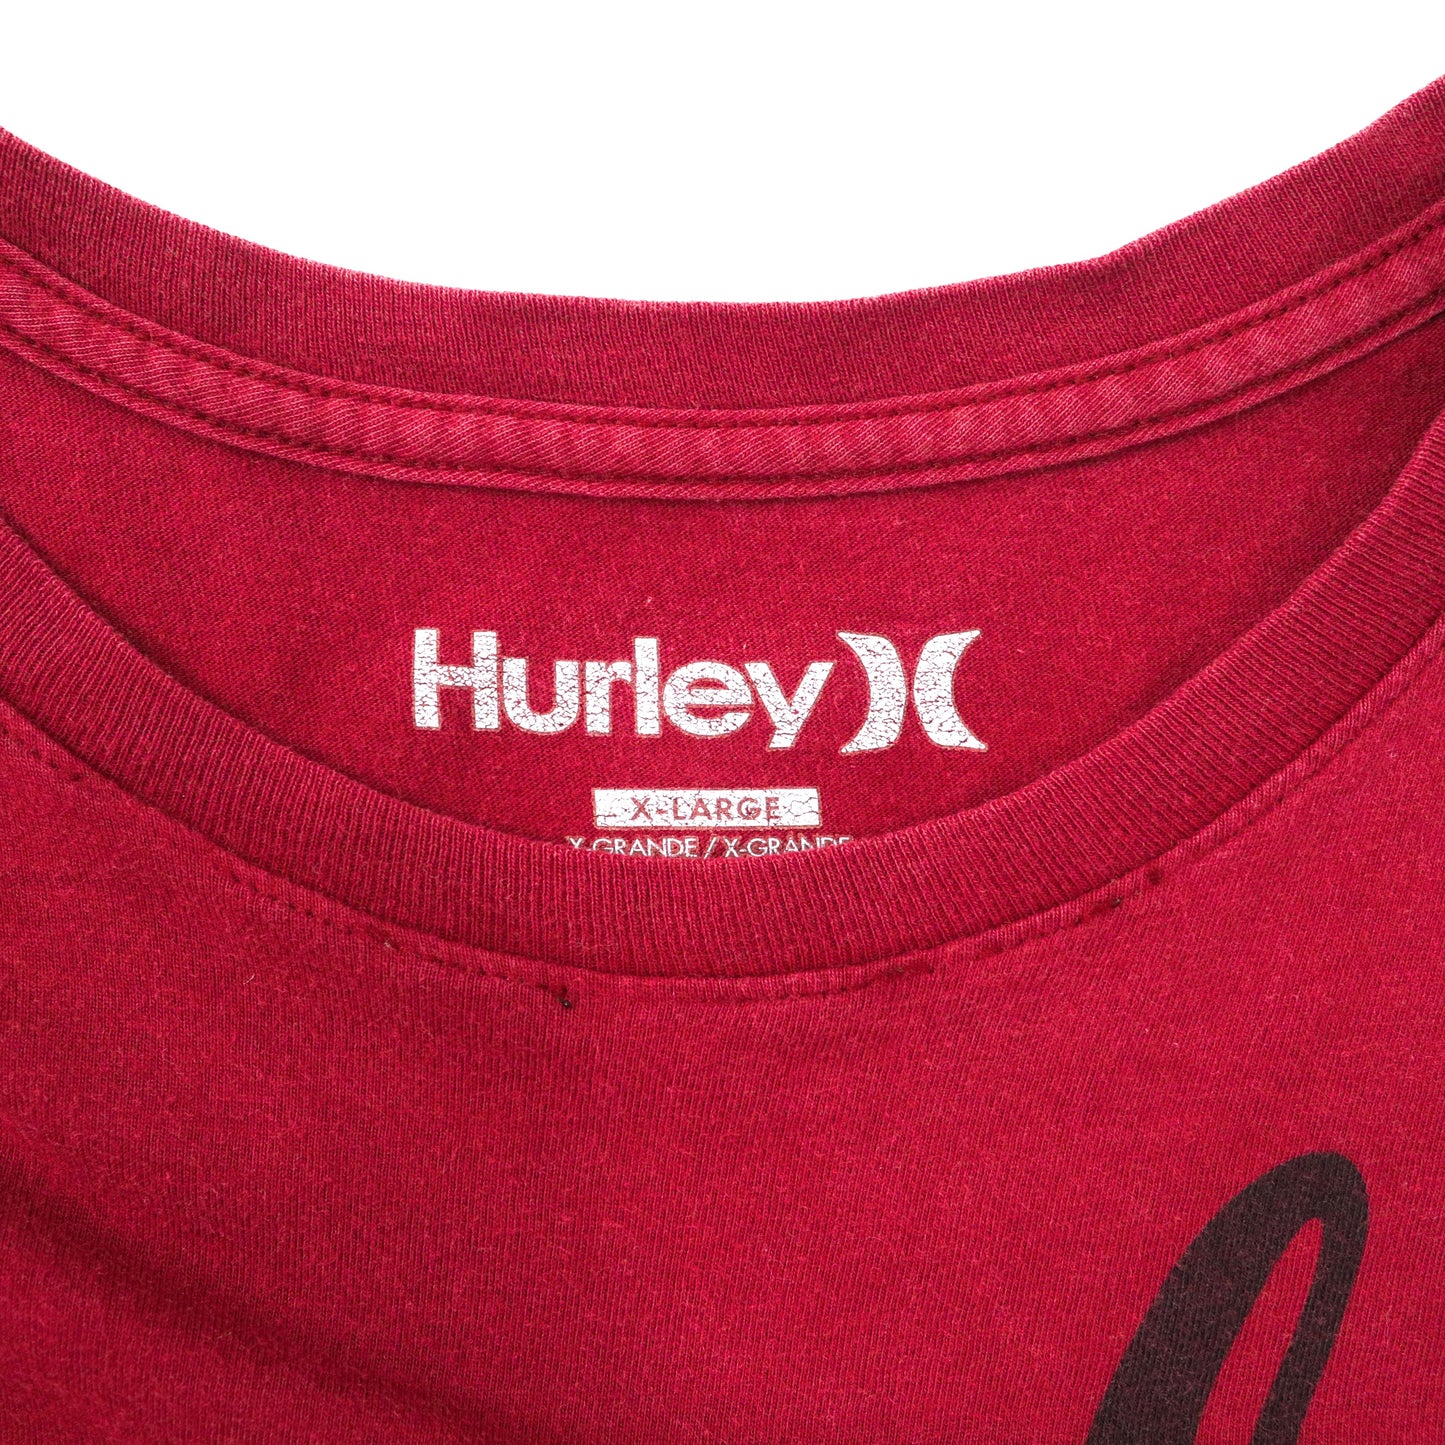 Hurley ビッグサイズ ロゴプリントTシャツ XL ボルドー コットン エルサルバドル製